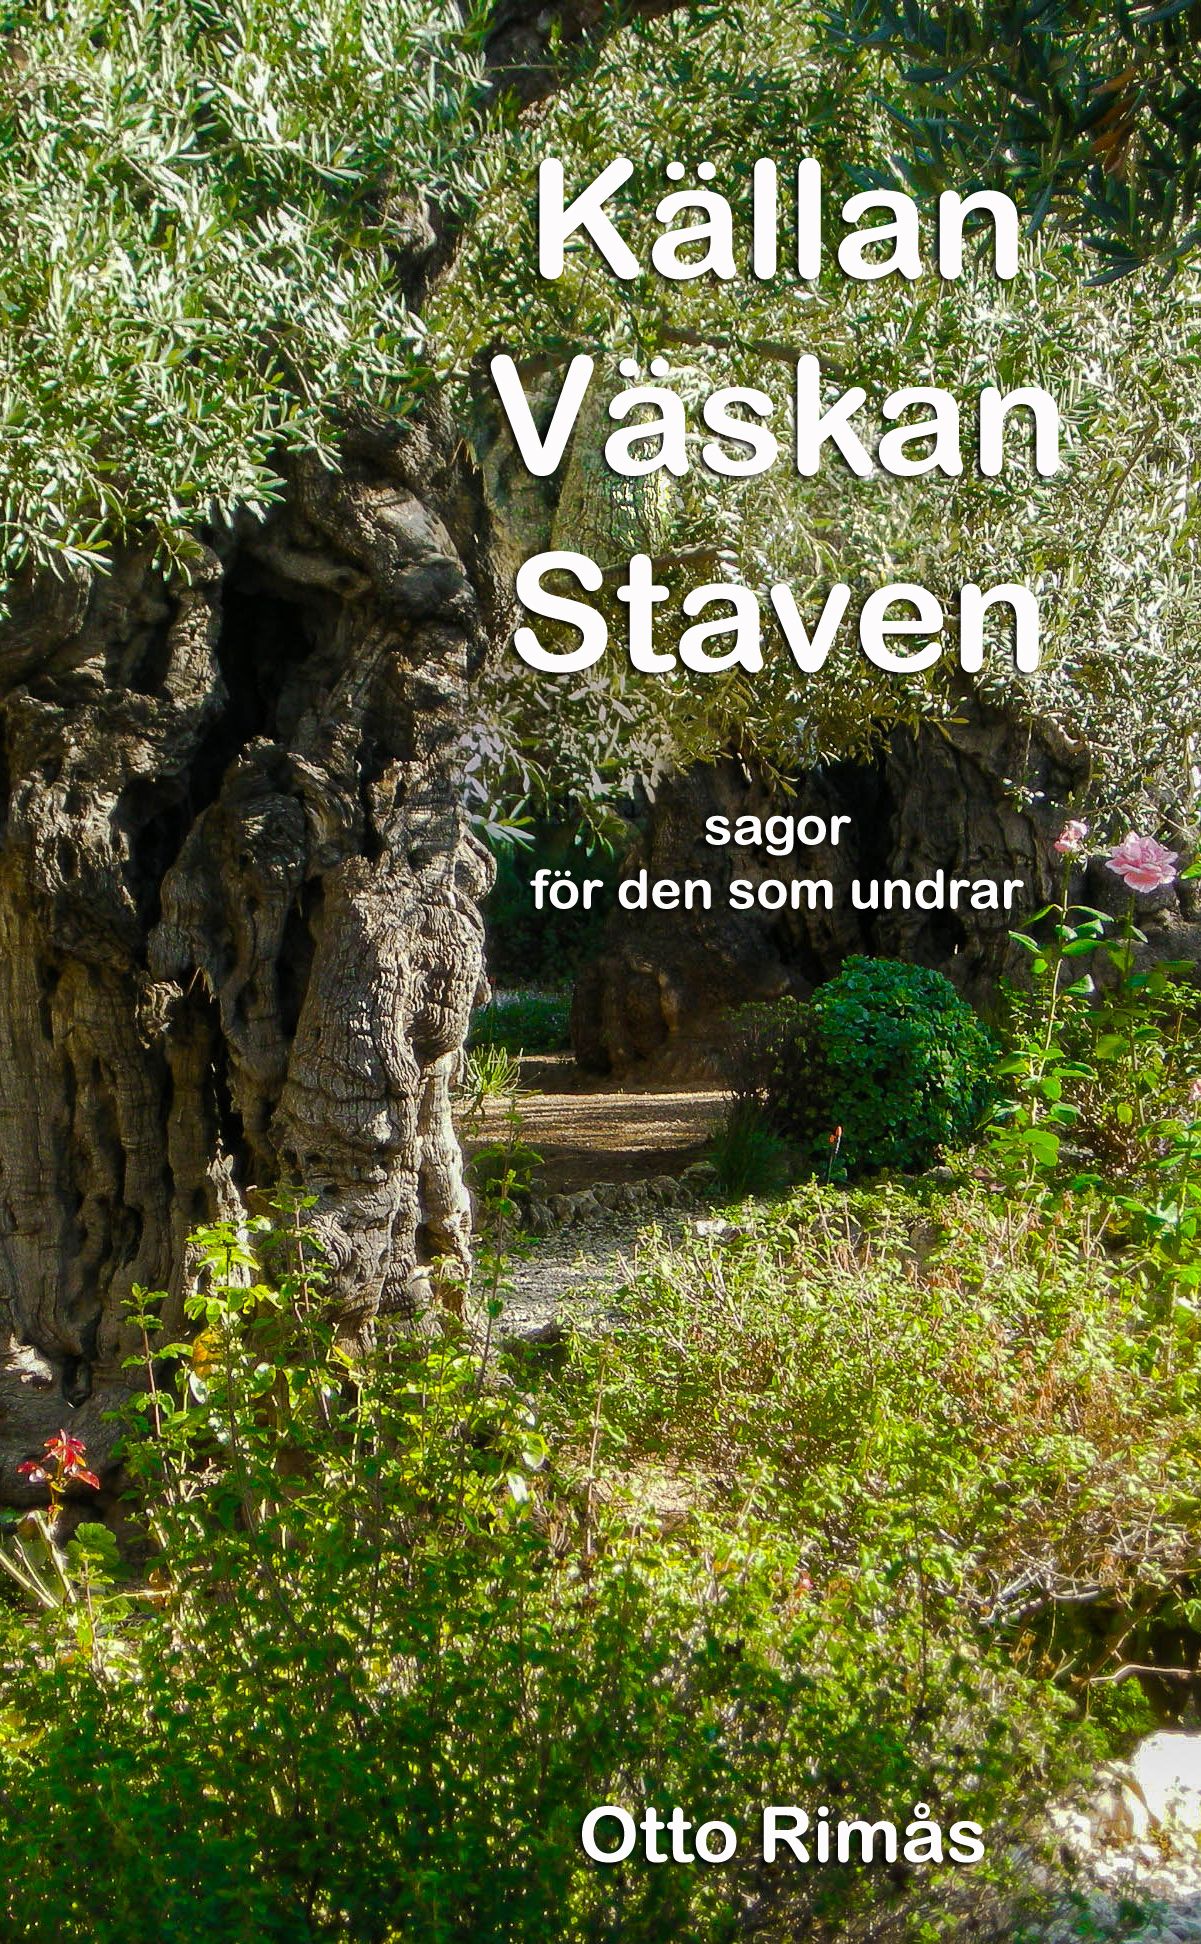 Källan Väskan Staven - sagor för den som undrar, e-bok av Otto Rimås